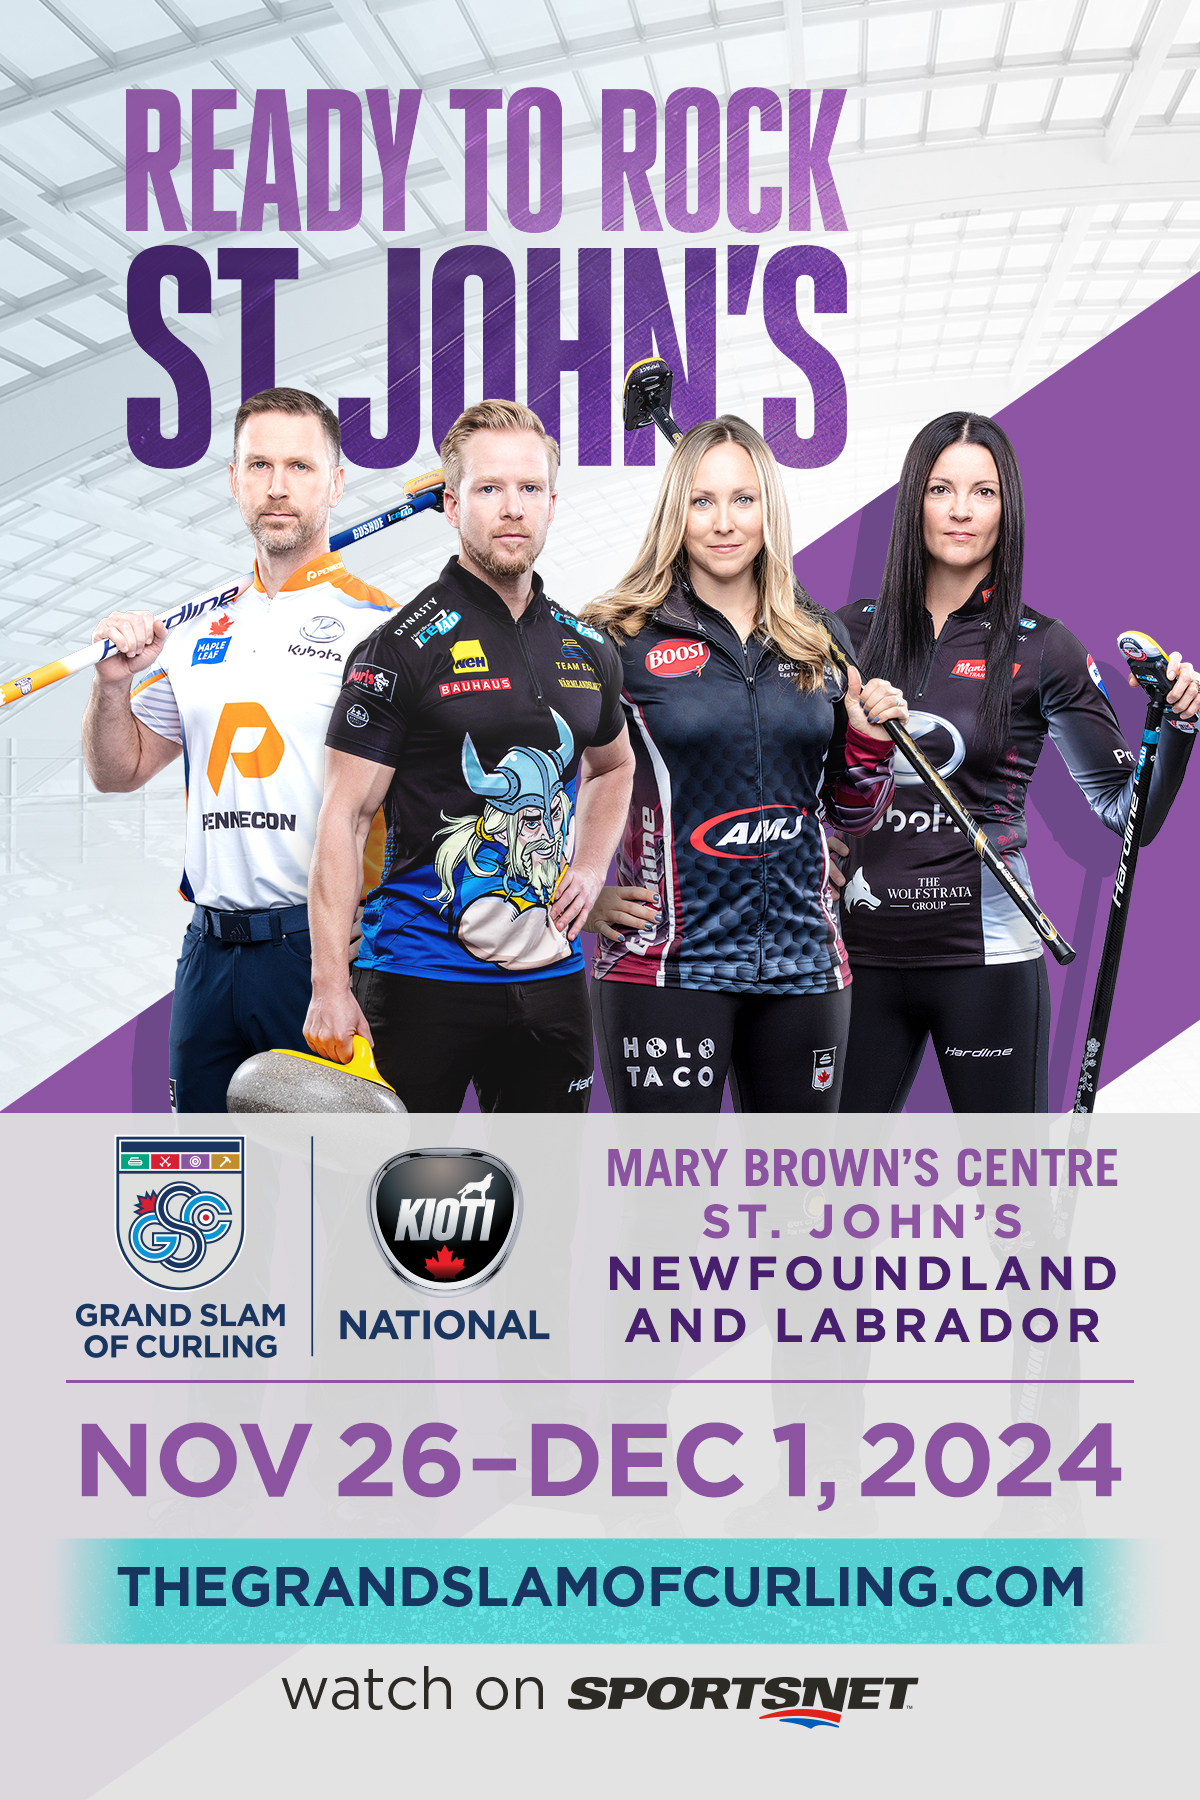 Grand Slam of Curling KIOTI National